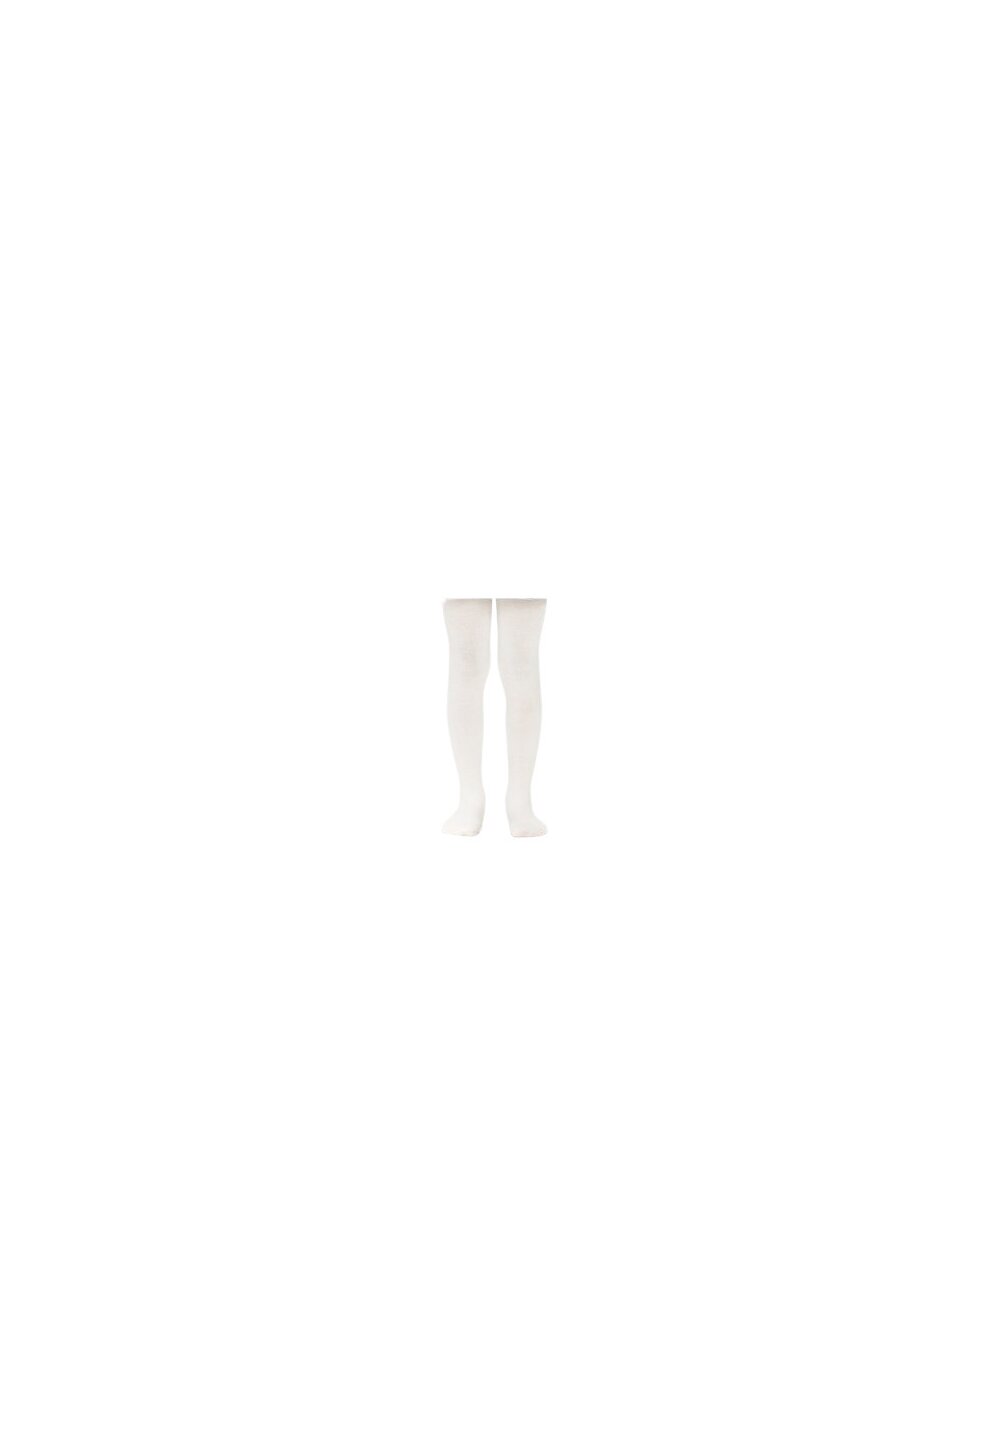 Ciorapi cu chilot, unisex, albi Prichindel